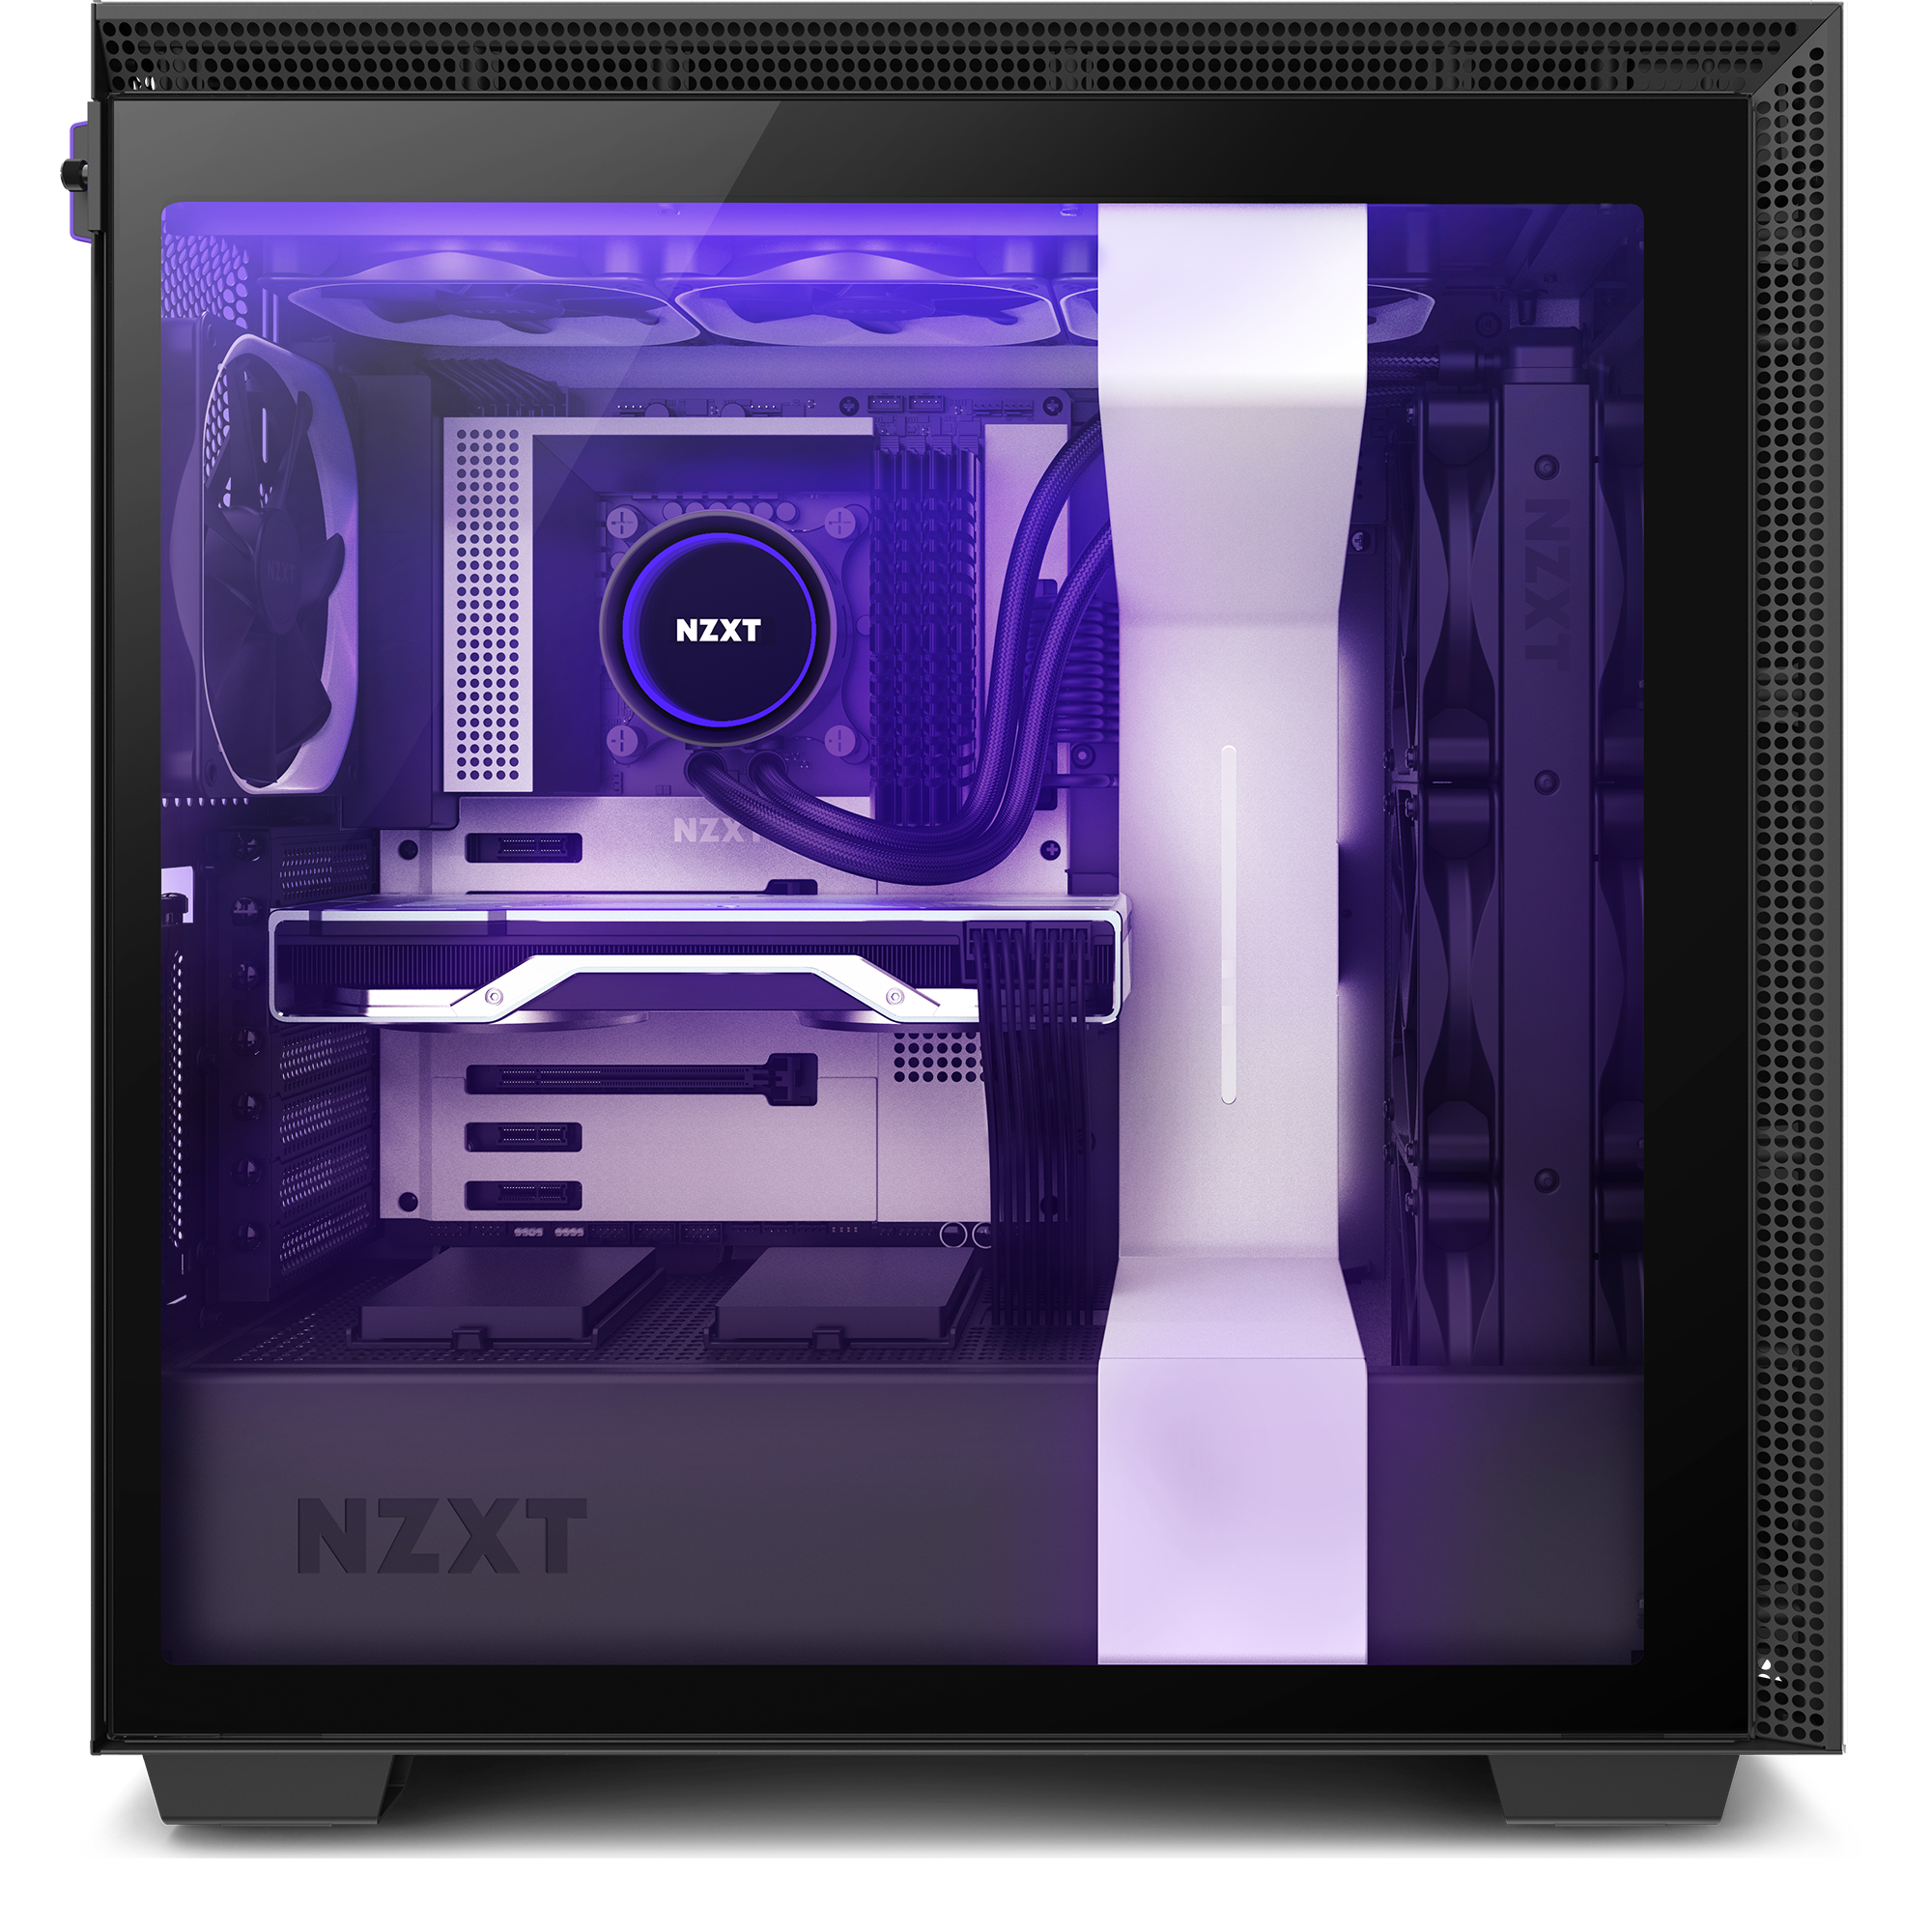 Für Wasserkühlung nutzbar NZXT H710 Tempered Glass-Seitenfenster mit Schnellspanner Front I/O USB Type-C Port ATX-Mid-Tower-Gehäuse für Gaming-PCs Schwarz/Rot 